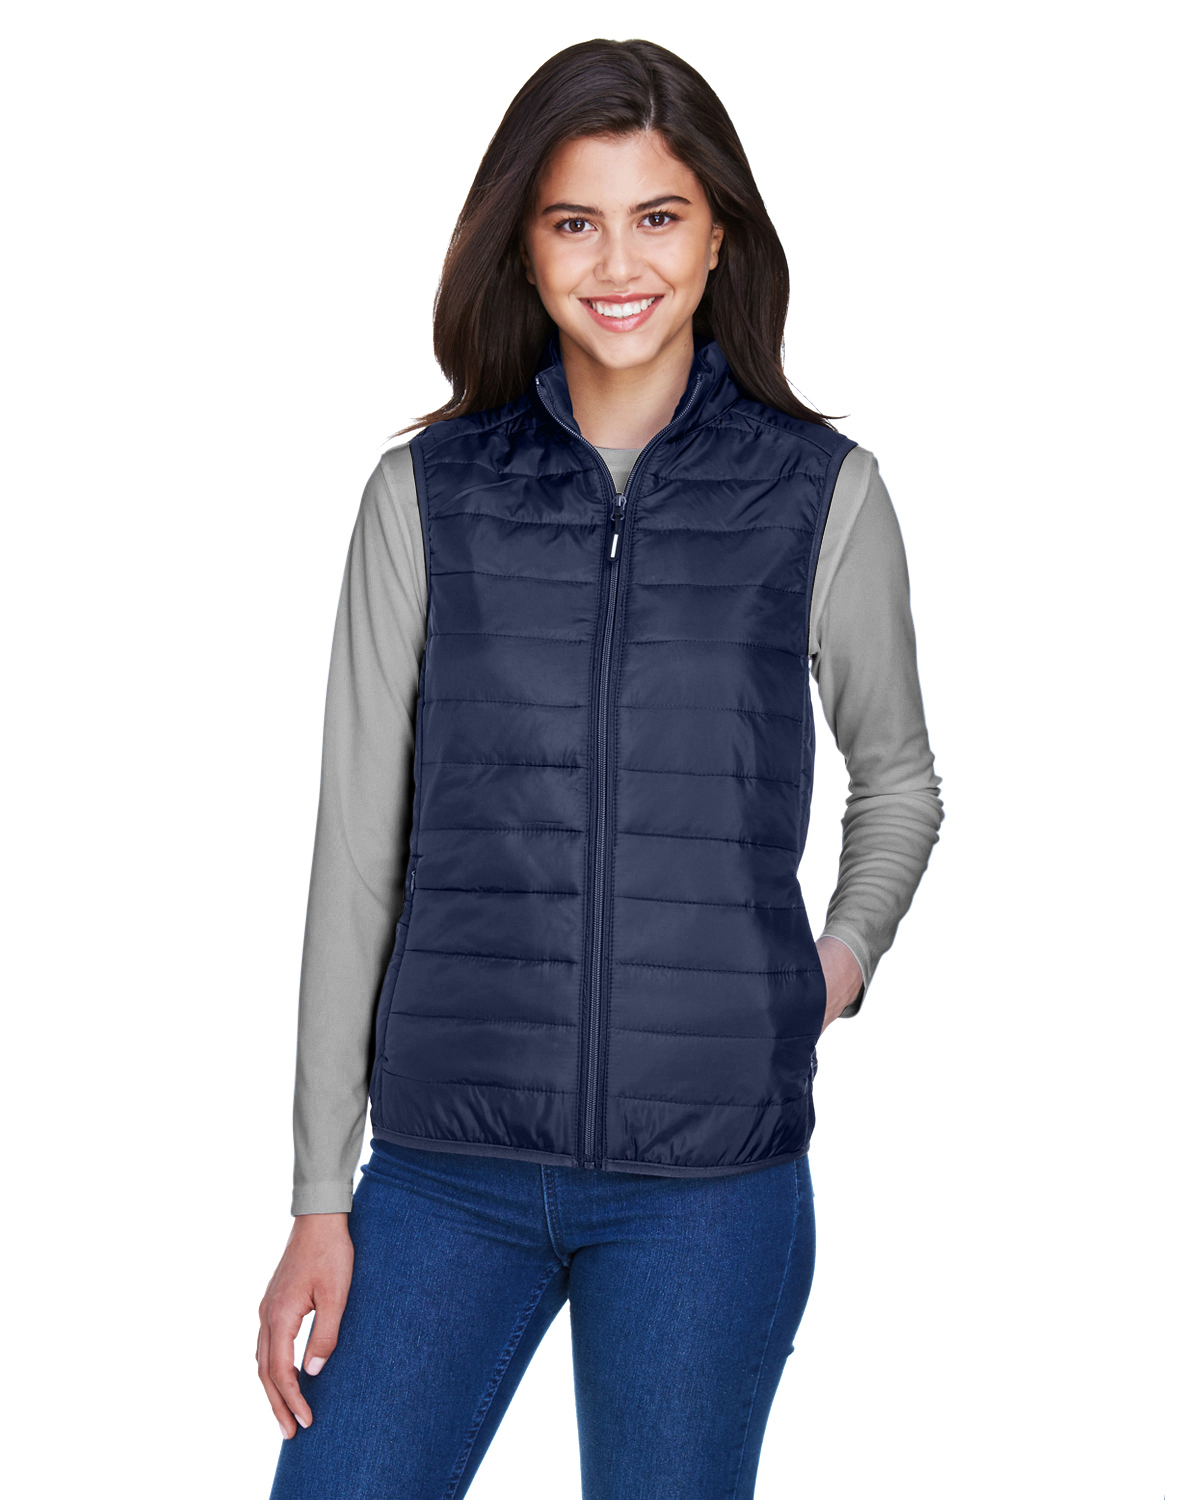 Core 365 Ladies’ Prevail Packable Puffer Vest